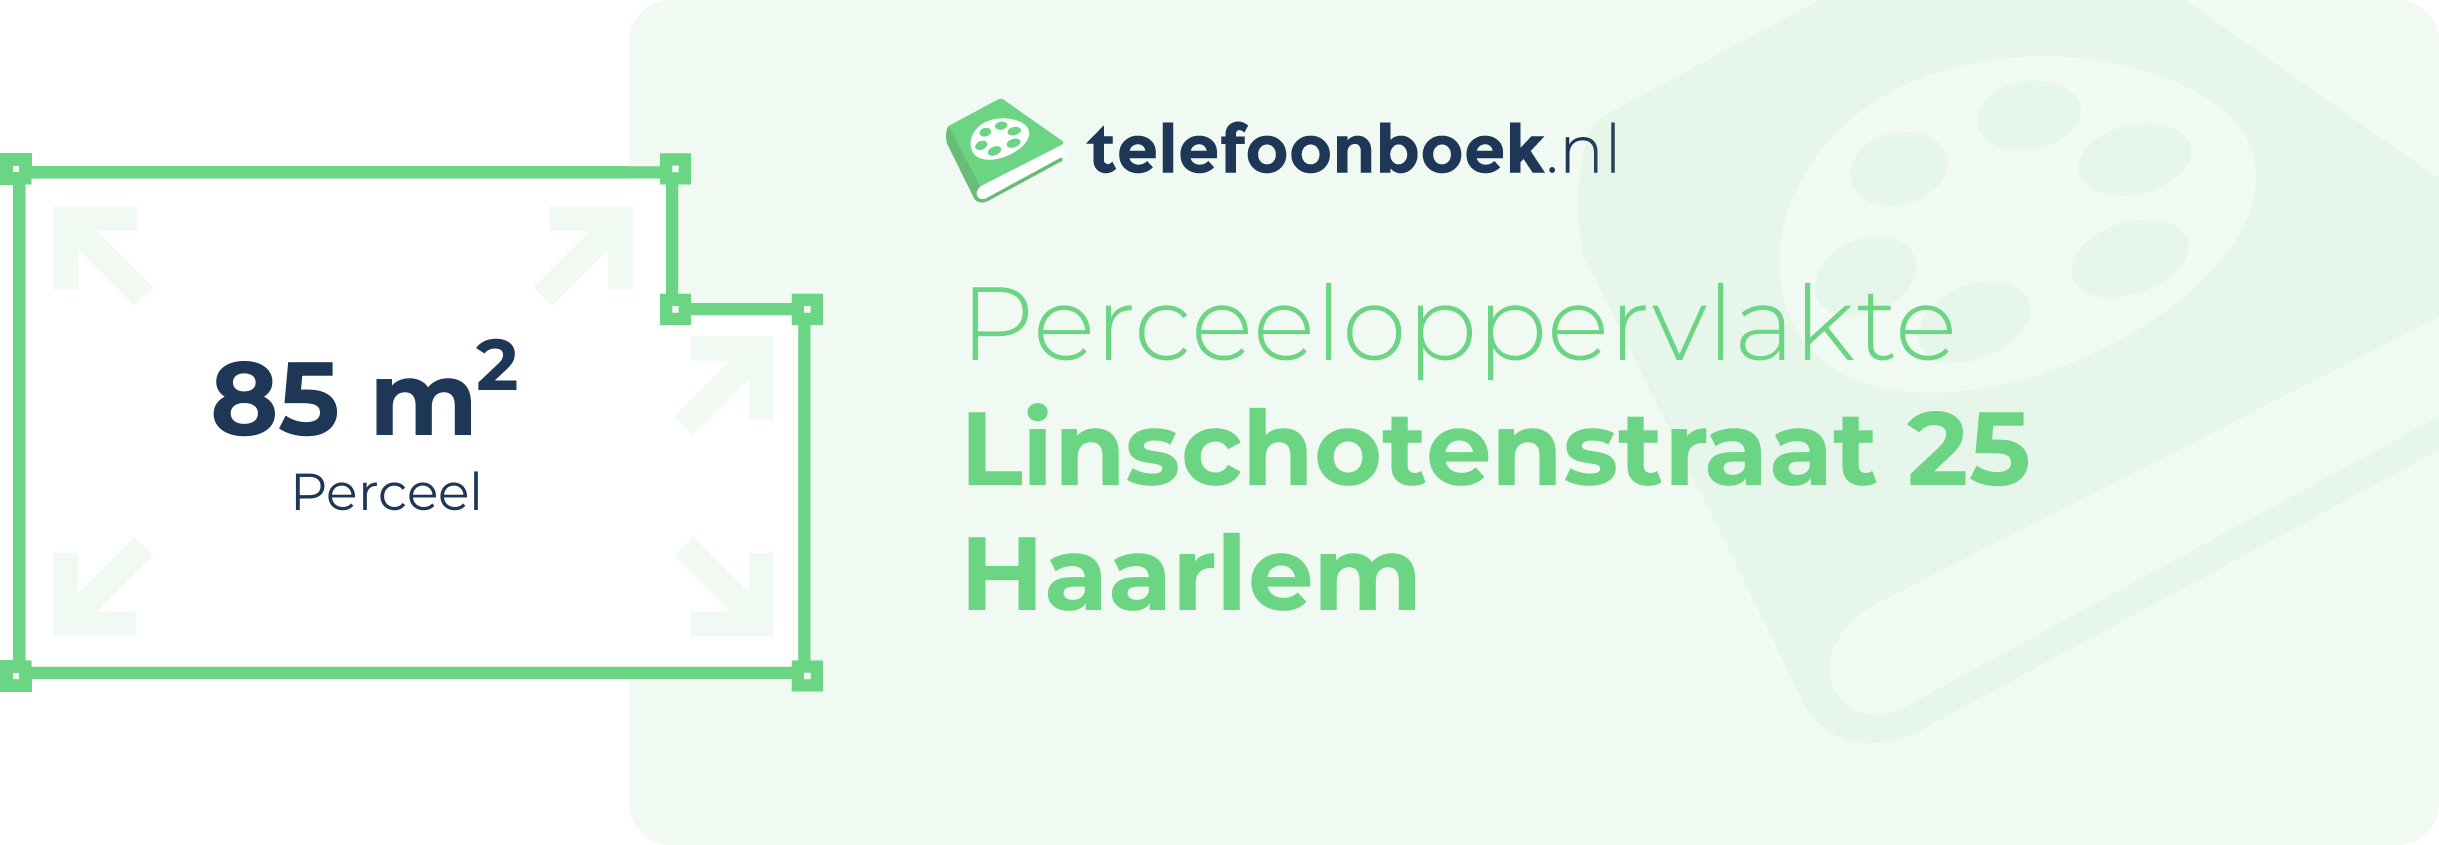 Perceeloppervlakte Linschotenstraat 25 Haarlem